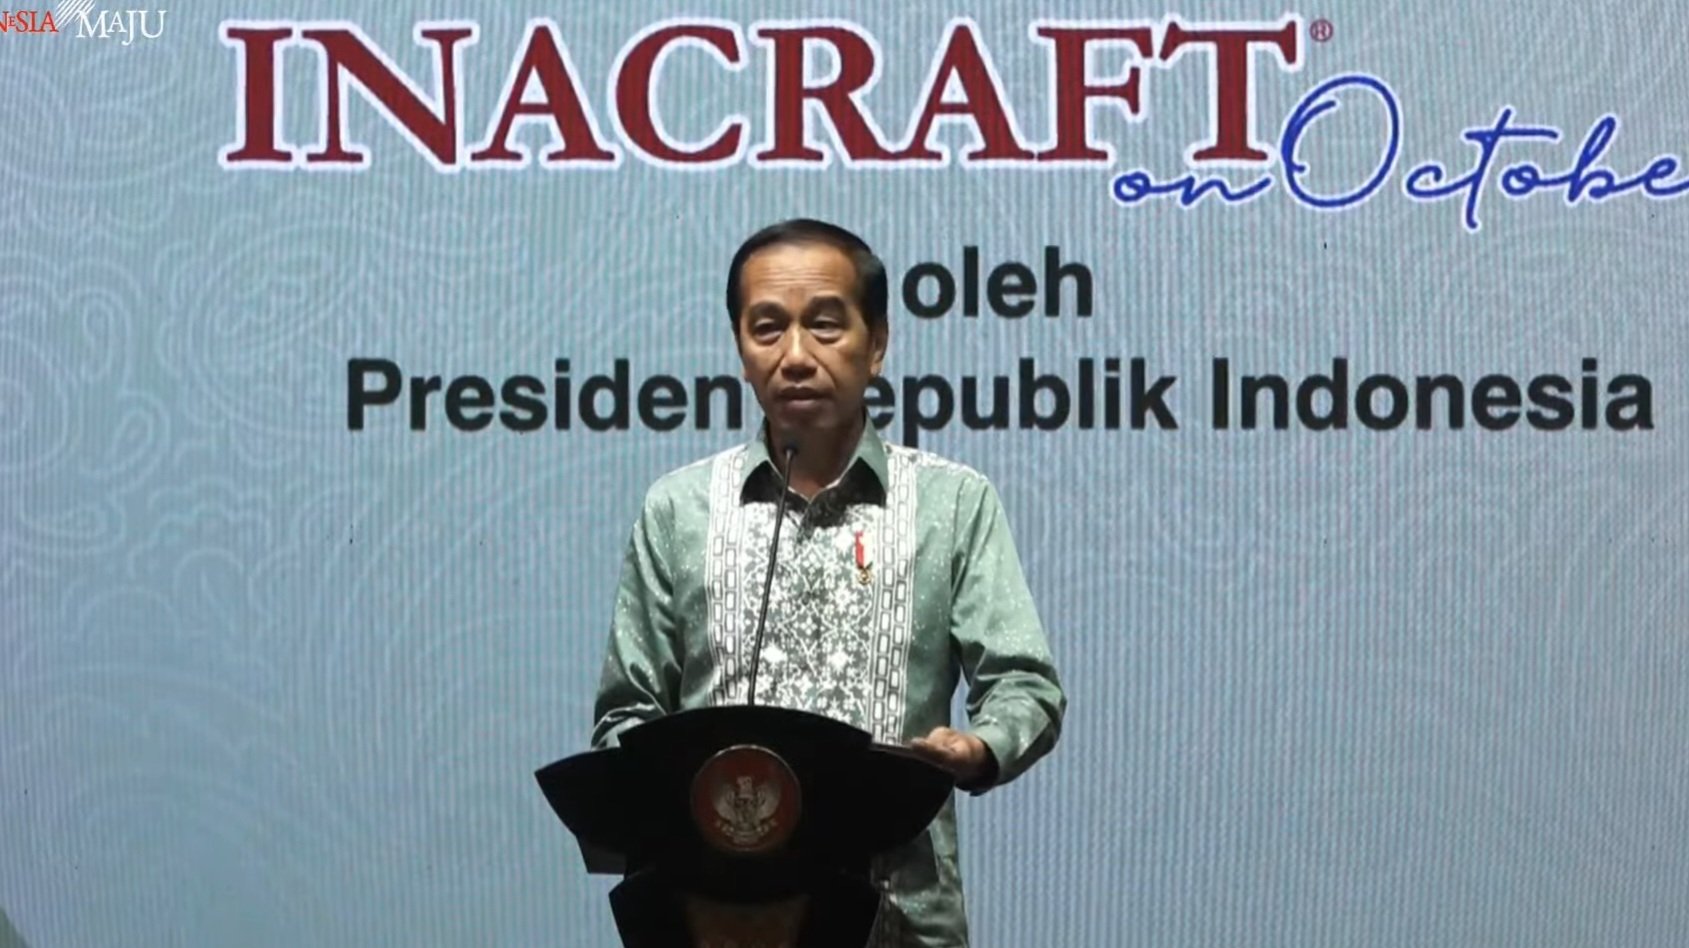 Presiden Joko Widodo di acara Inacraft 2023 (Sinpo.id/Setkab)